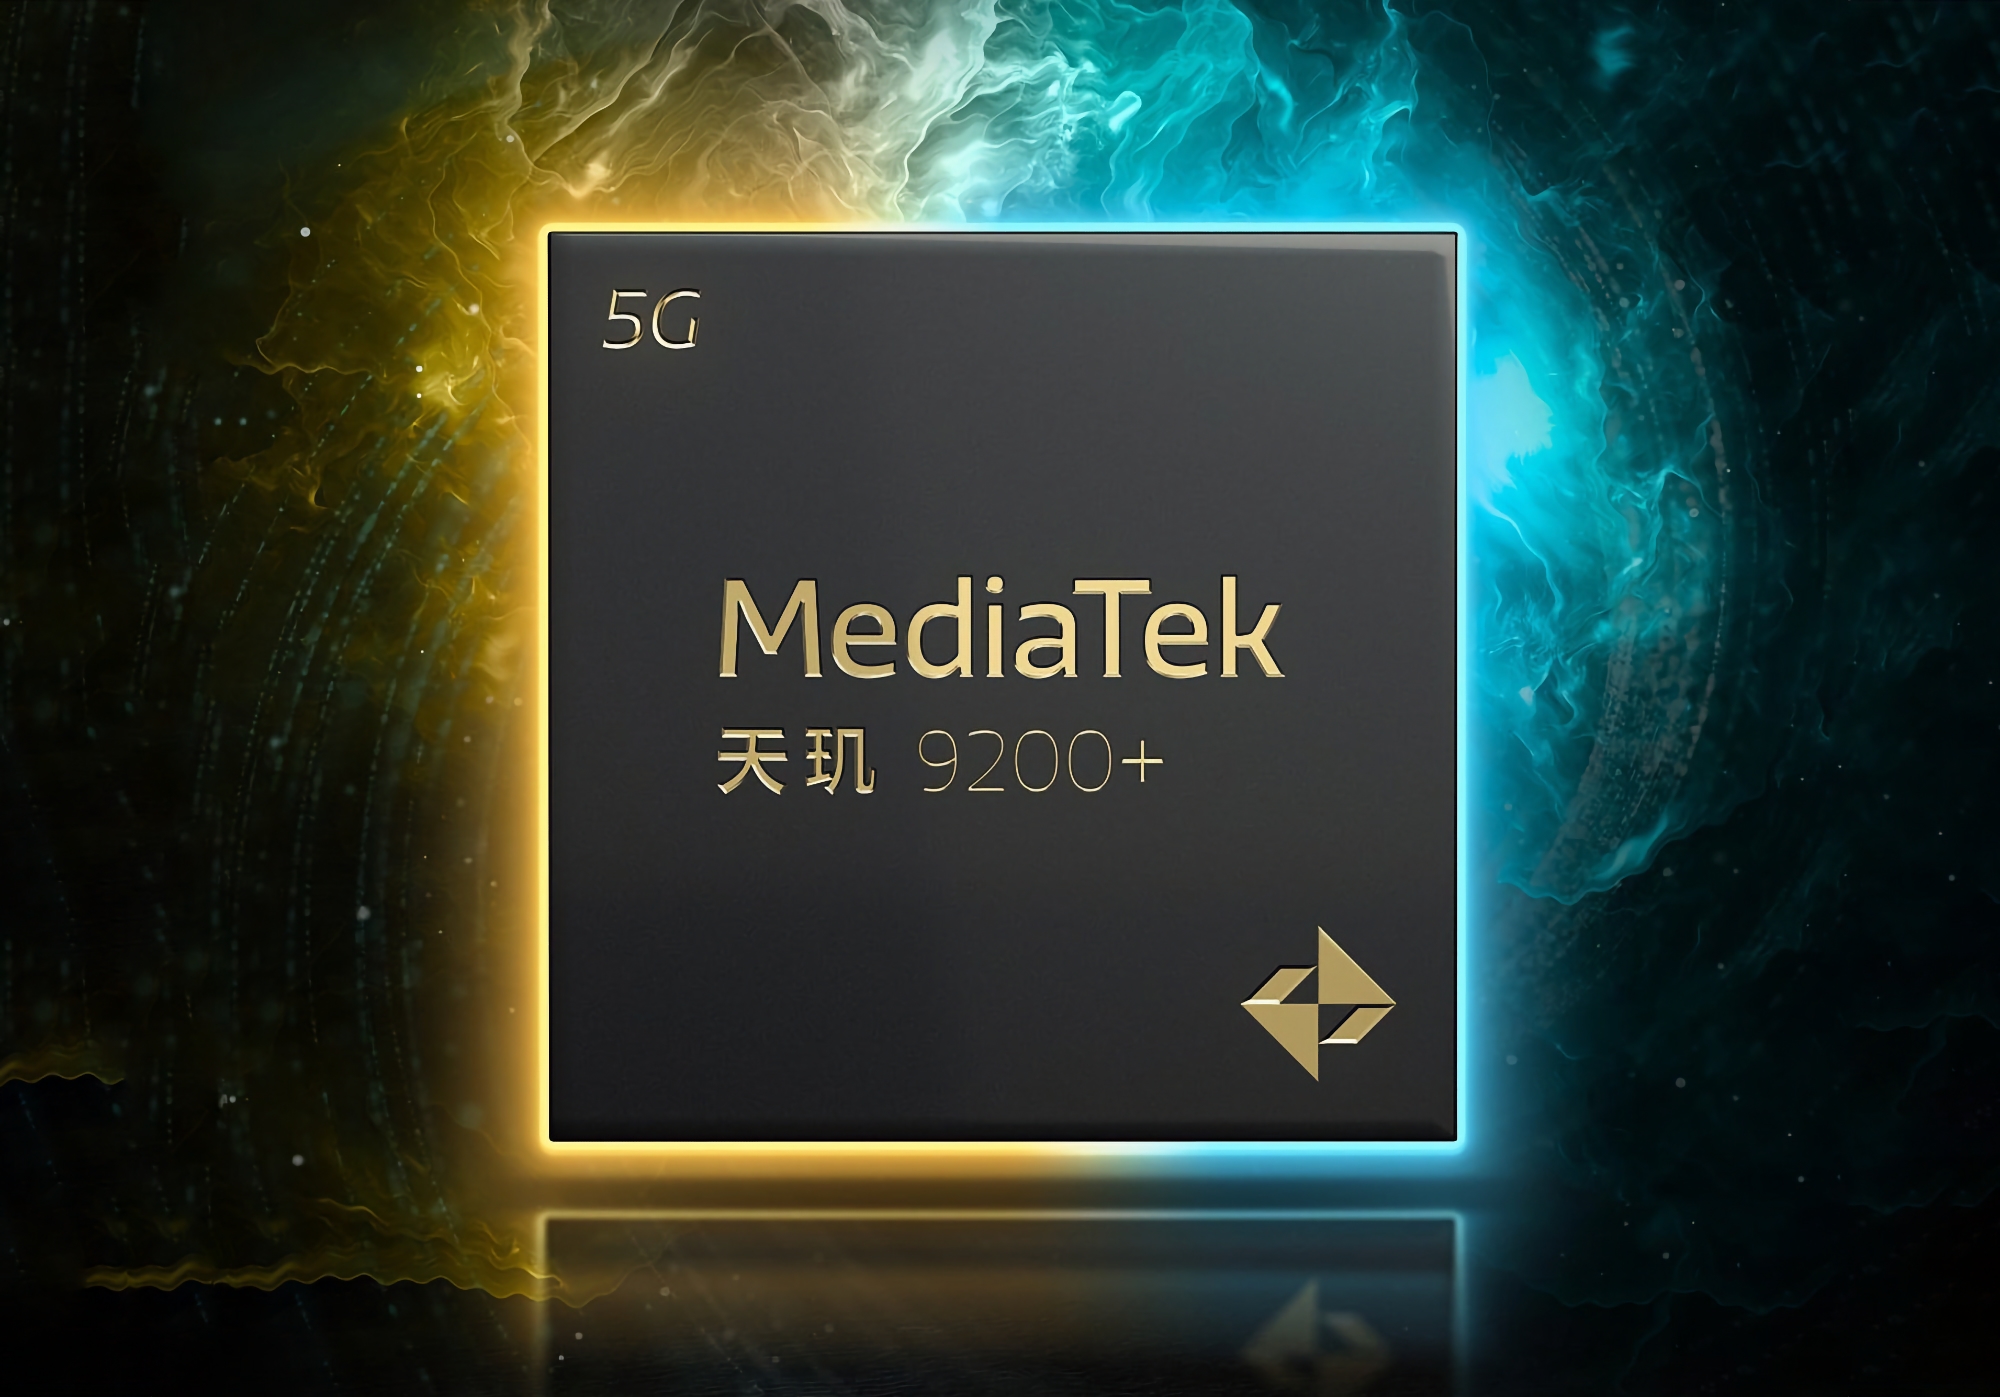 Jetzt ist es offiziell: MediaTek stellt am 10. Mai den neuen Flaggschiff-Prozessor Dimensity 9200+ vor